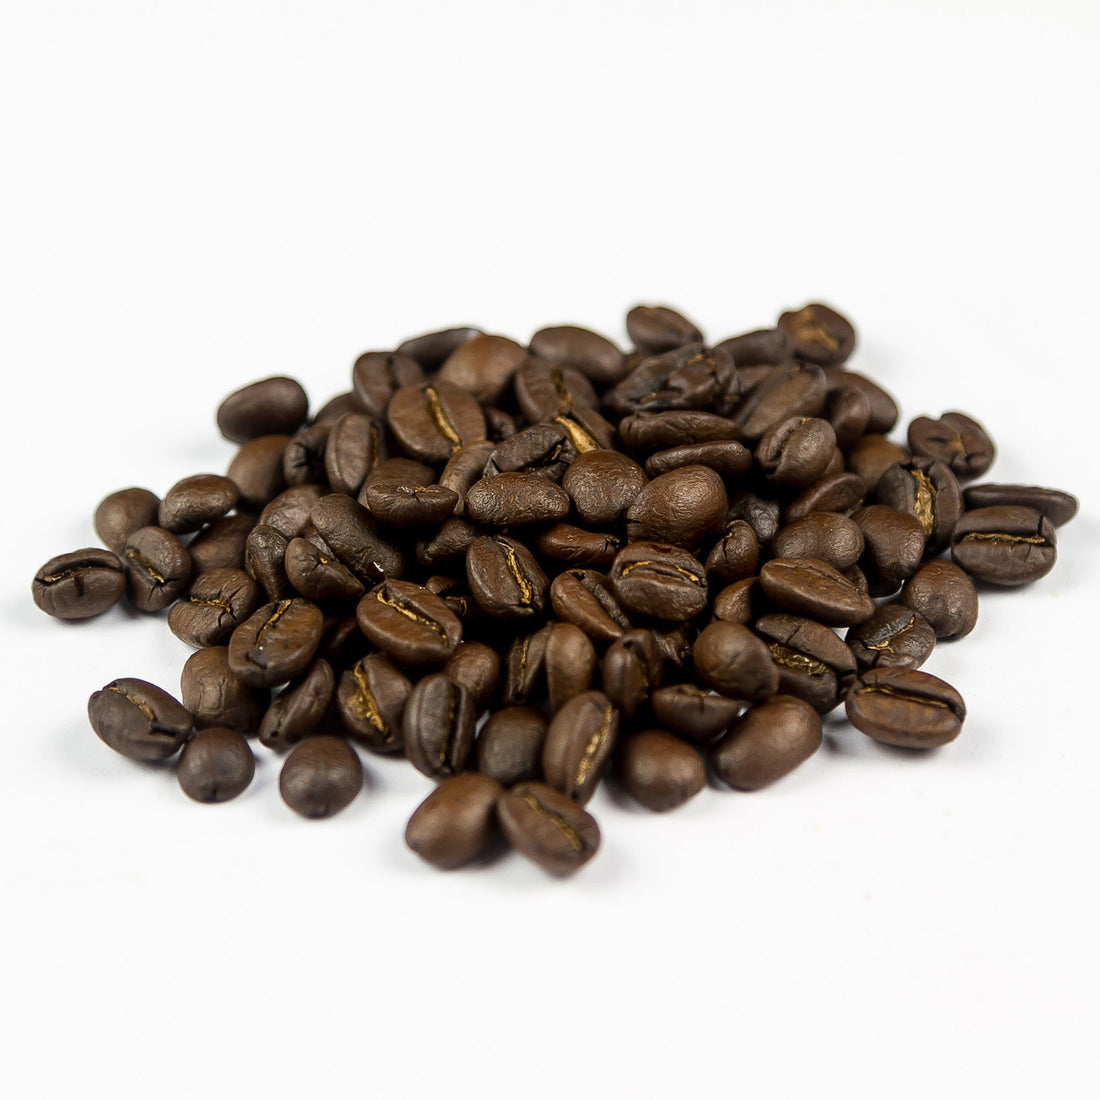 Redber, EL SALVADOR DIAMANTE (SHG) - Dark Roast Coffee, Redber Coffee